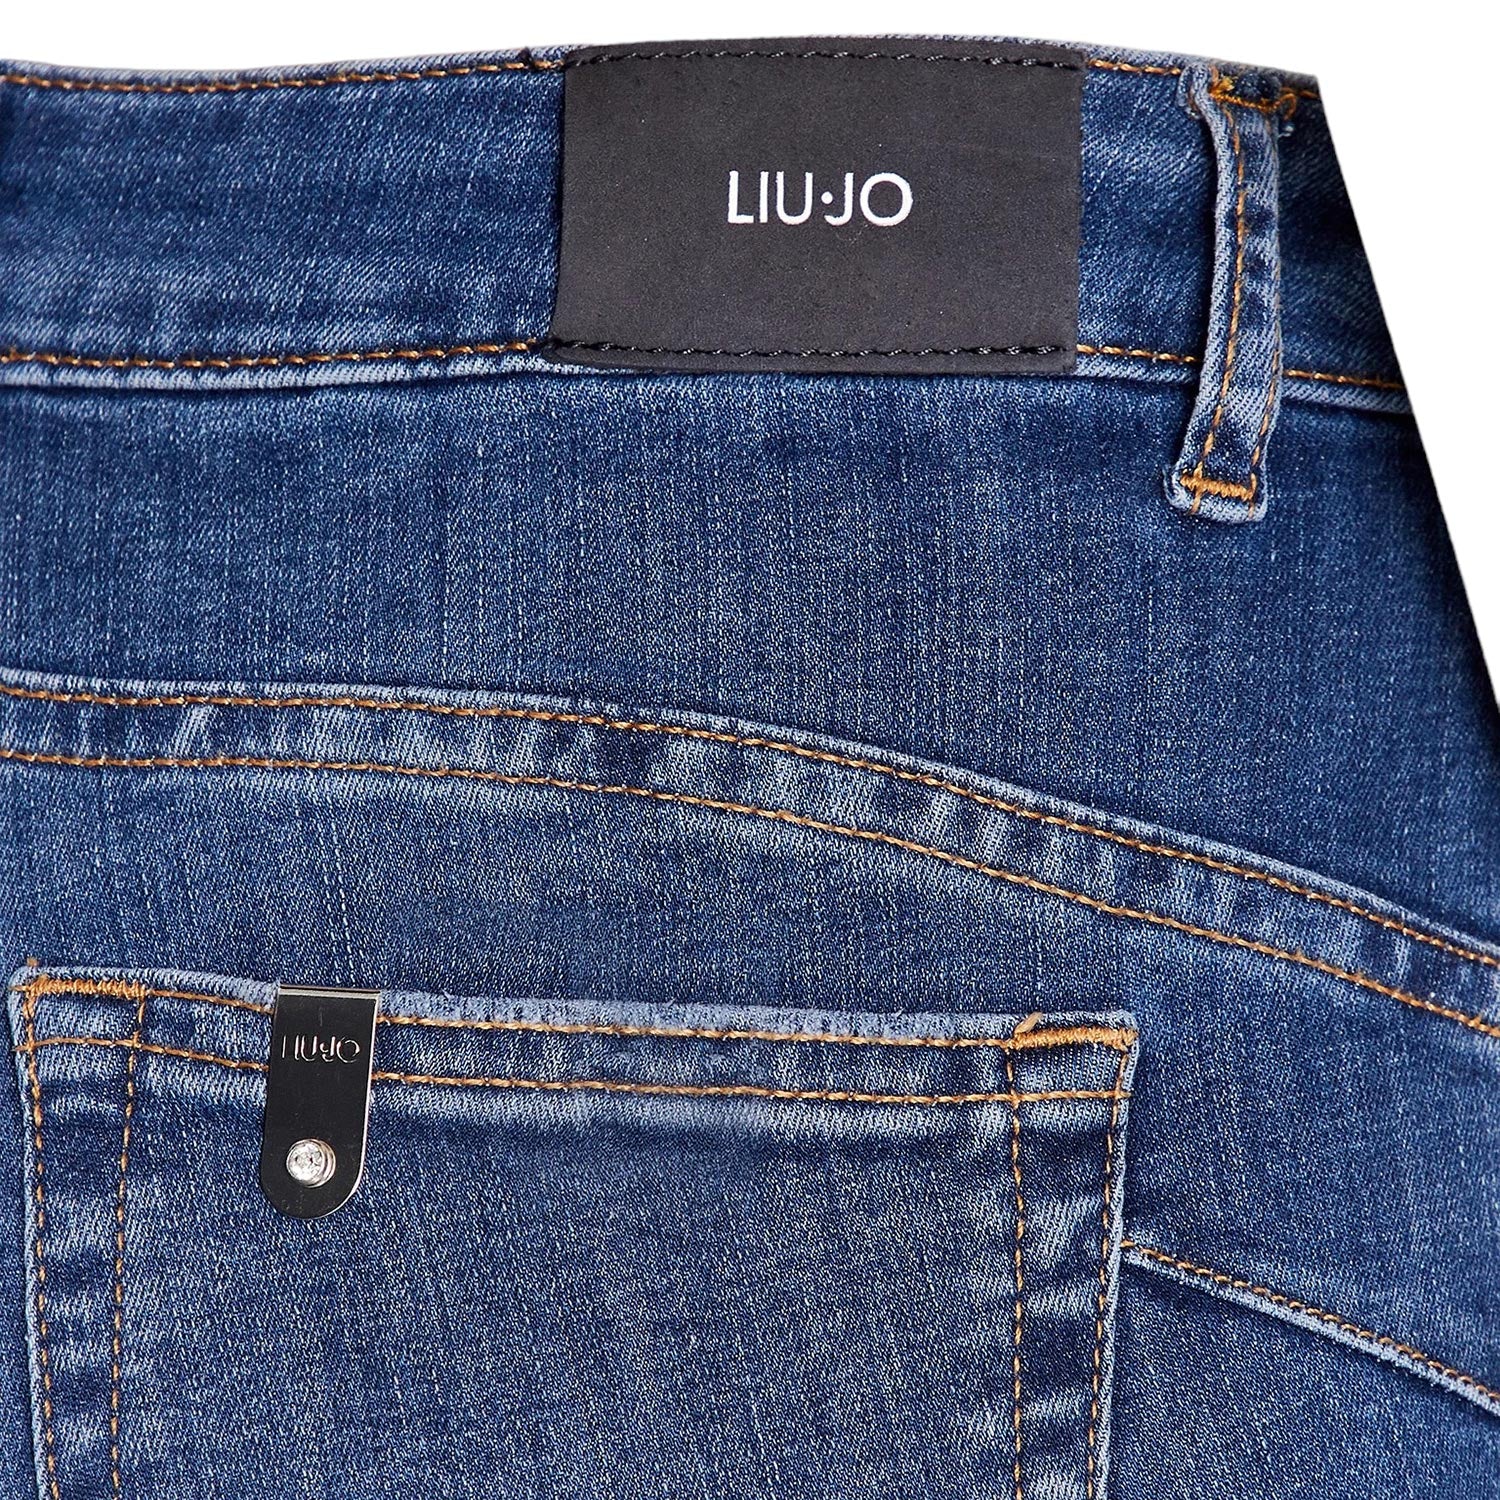 liu-jo-UXX042D481178482-jeans-denim